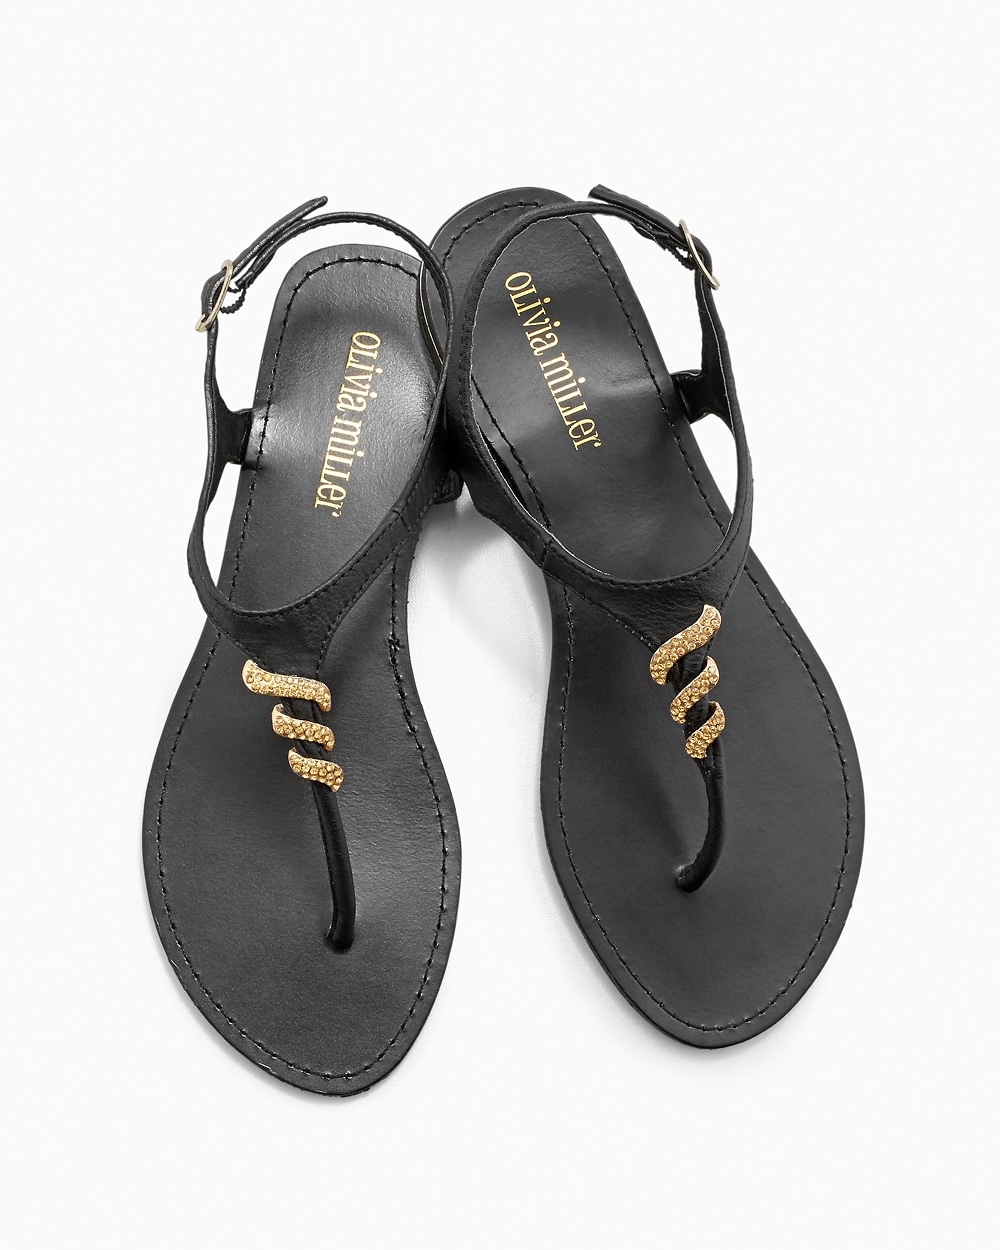 Olivia Miller Gold Embellished Sandal